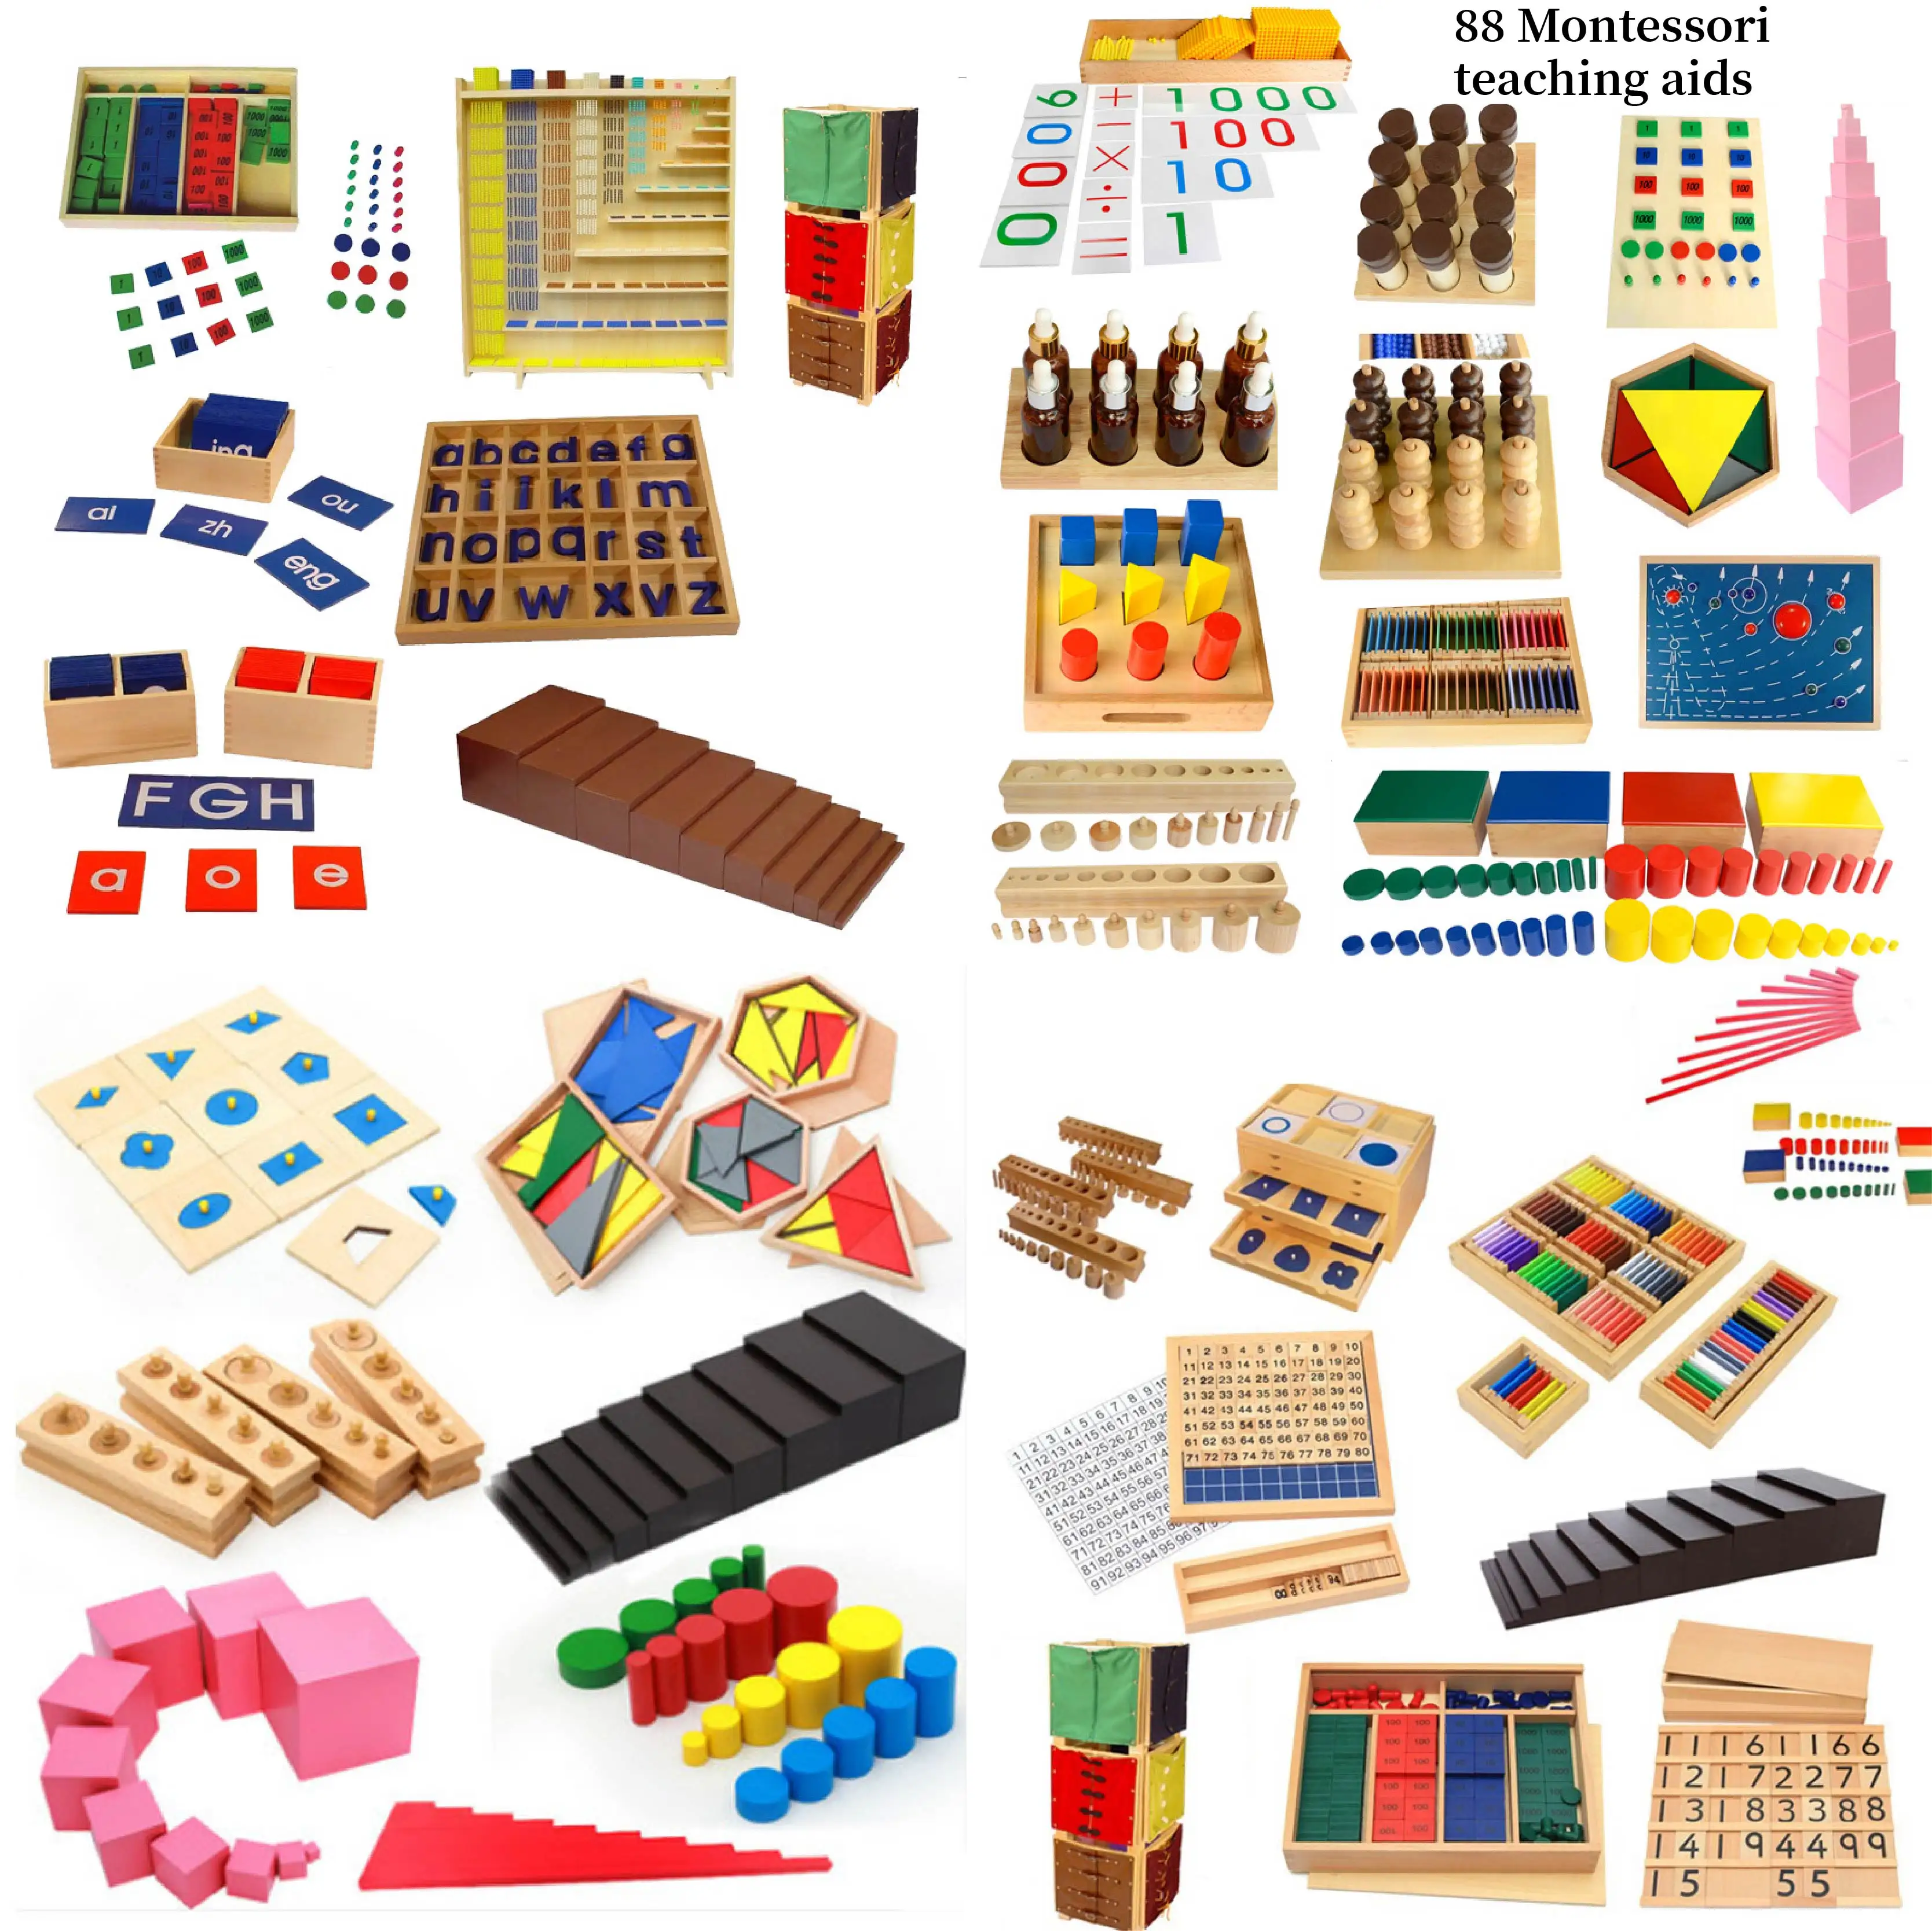 Ensino de aprendizagem do bebê montessori, mobiliário manual de madeira, materiais de jardim de infância, brinquedo educativo sensorial, jogos infantis